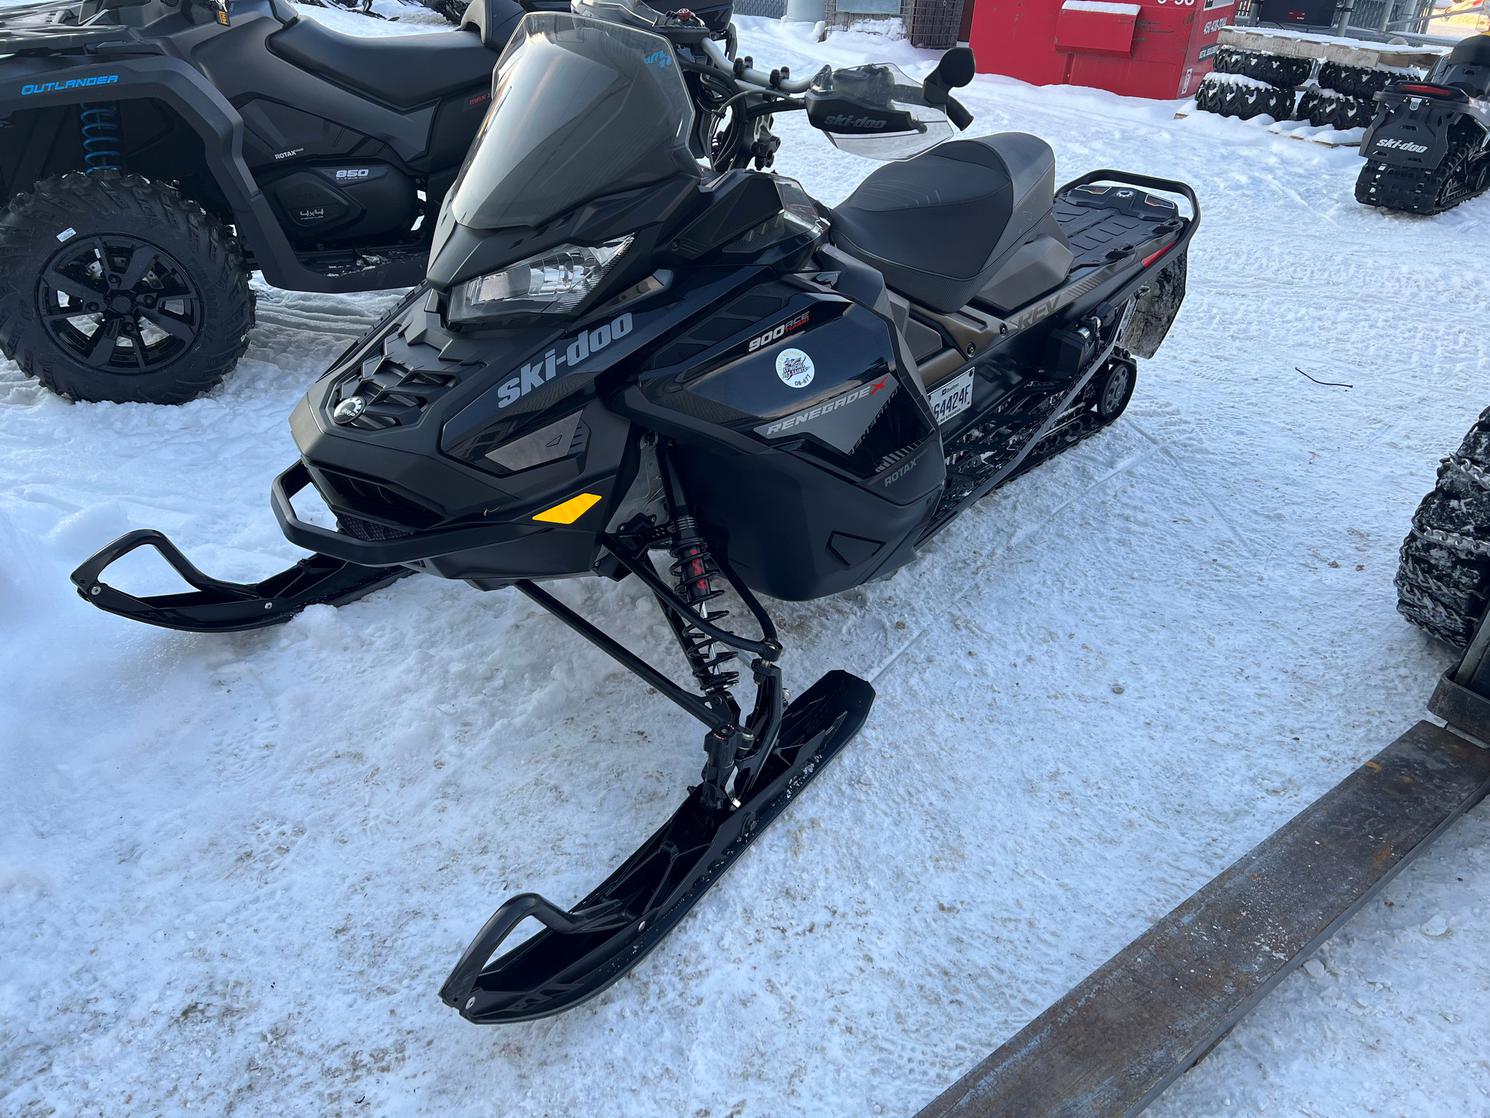 Ski-Doo RENEGADE X 900 TURBO 2019